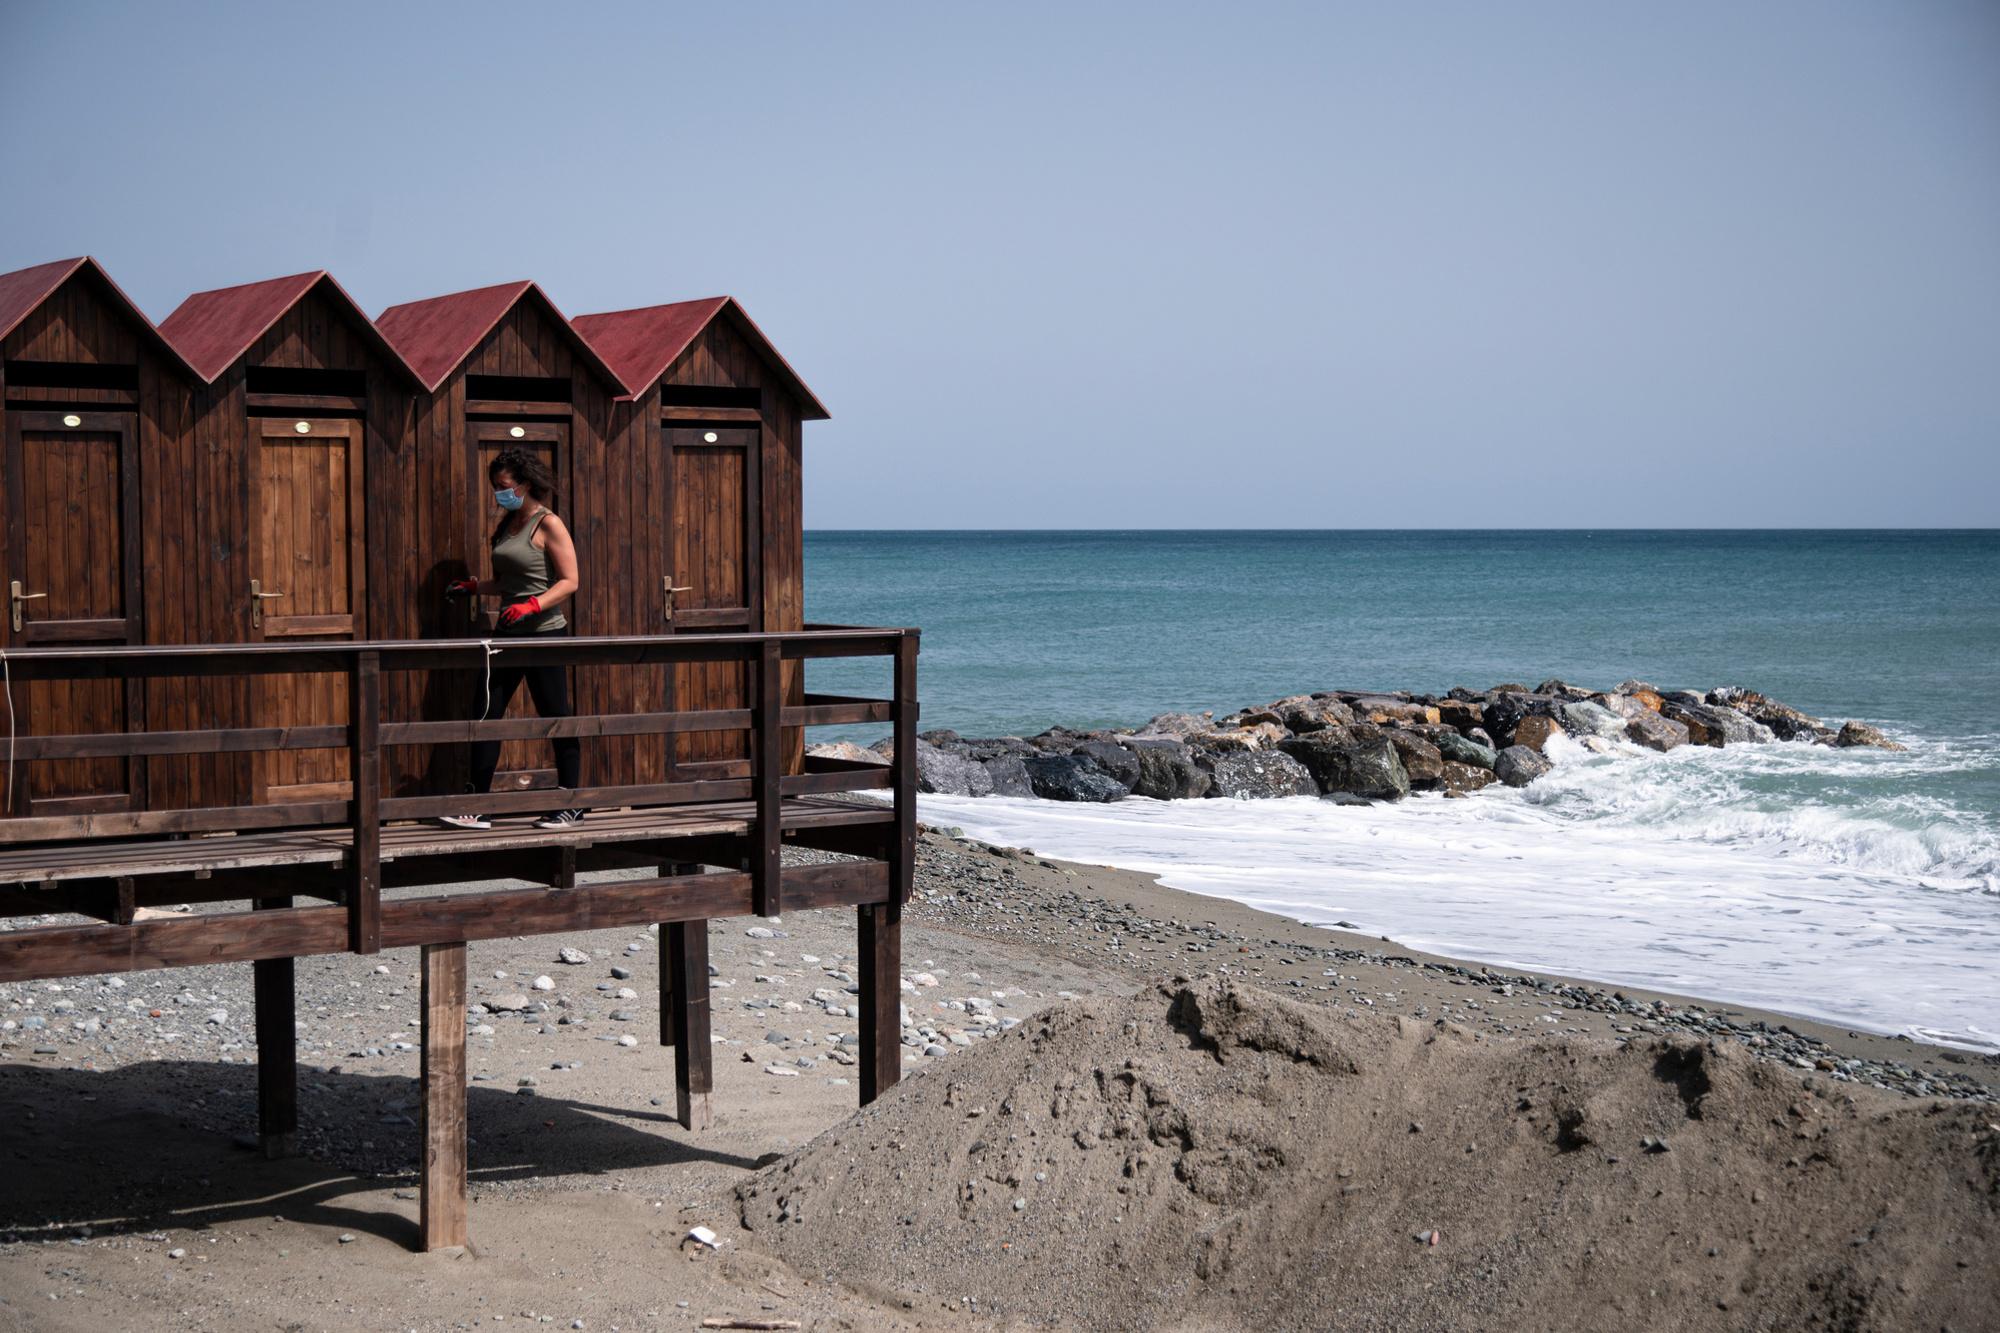 La propriétaire d'une plage prépare les cabines et les zones des clients pour la prochaine saison estivale